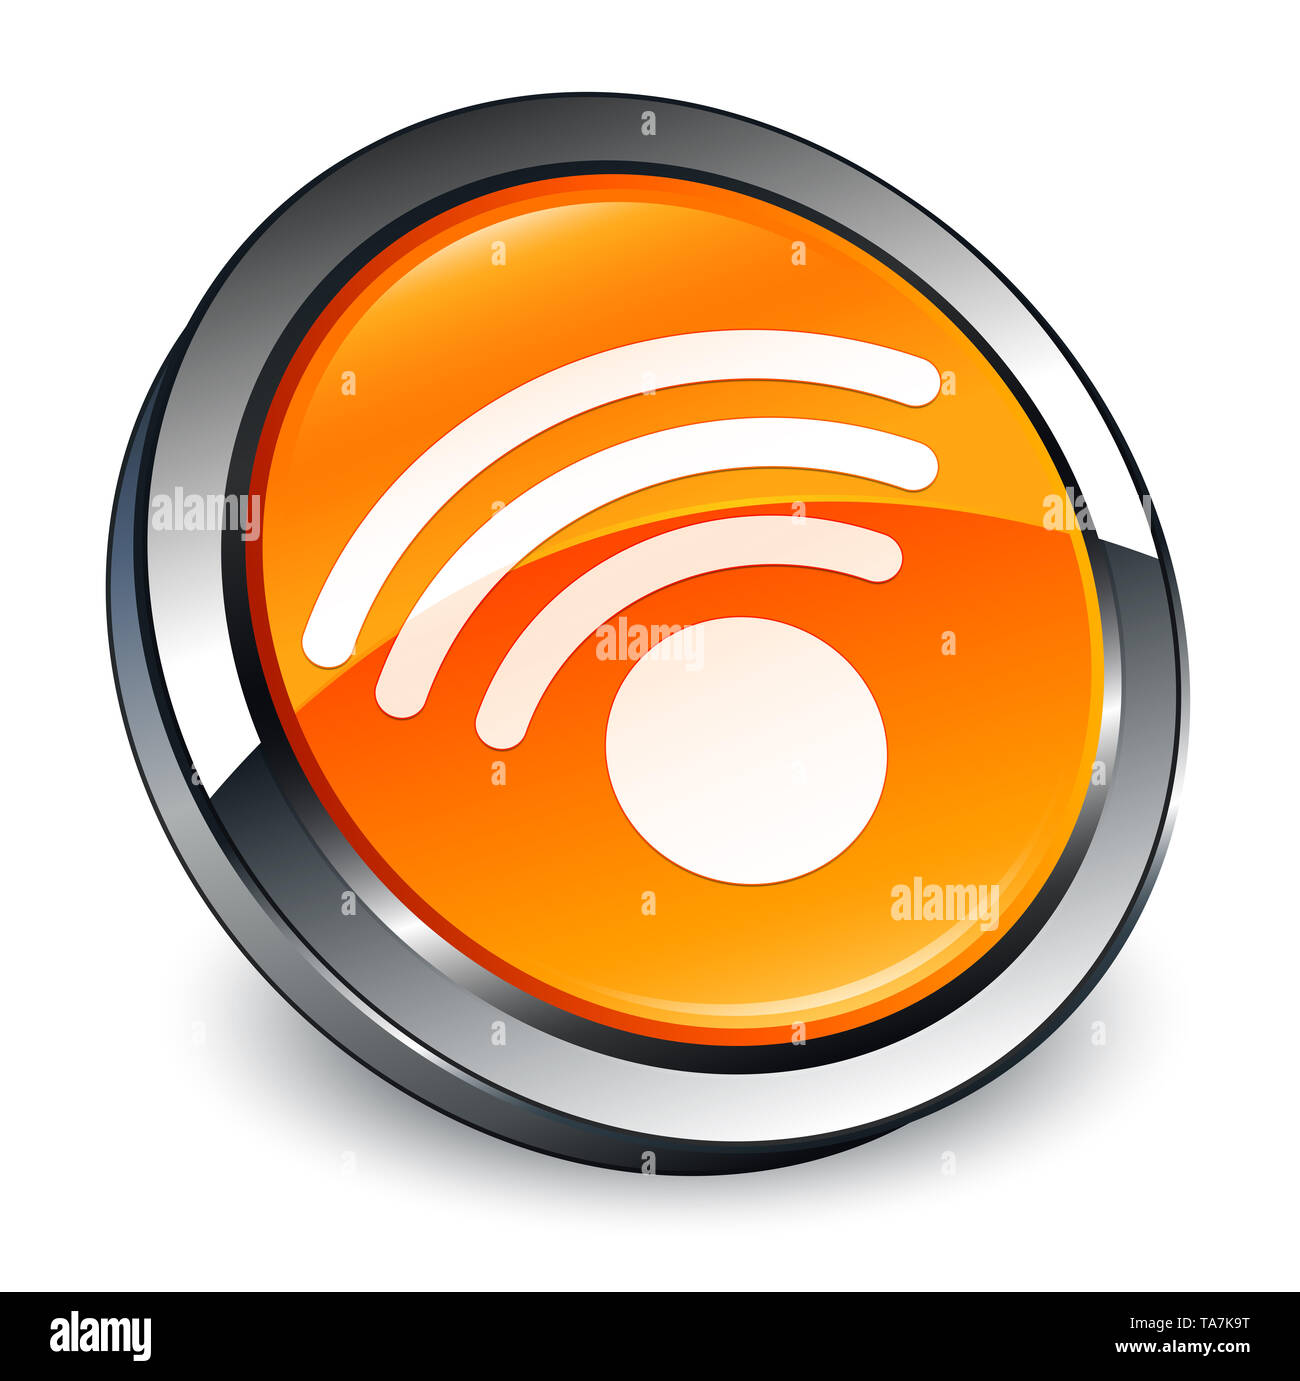 Connexion Wi-Fi au réseau local isolé sur l'icône bouton rond orange 3d abstract illustration Banque D'Images